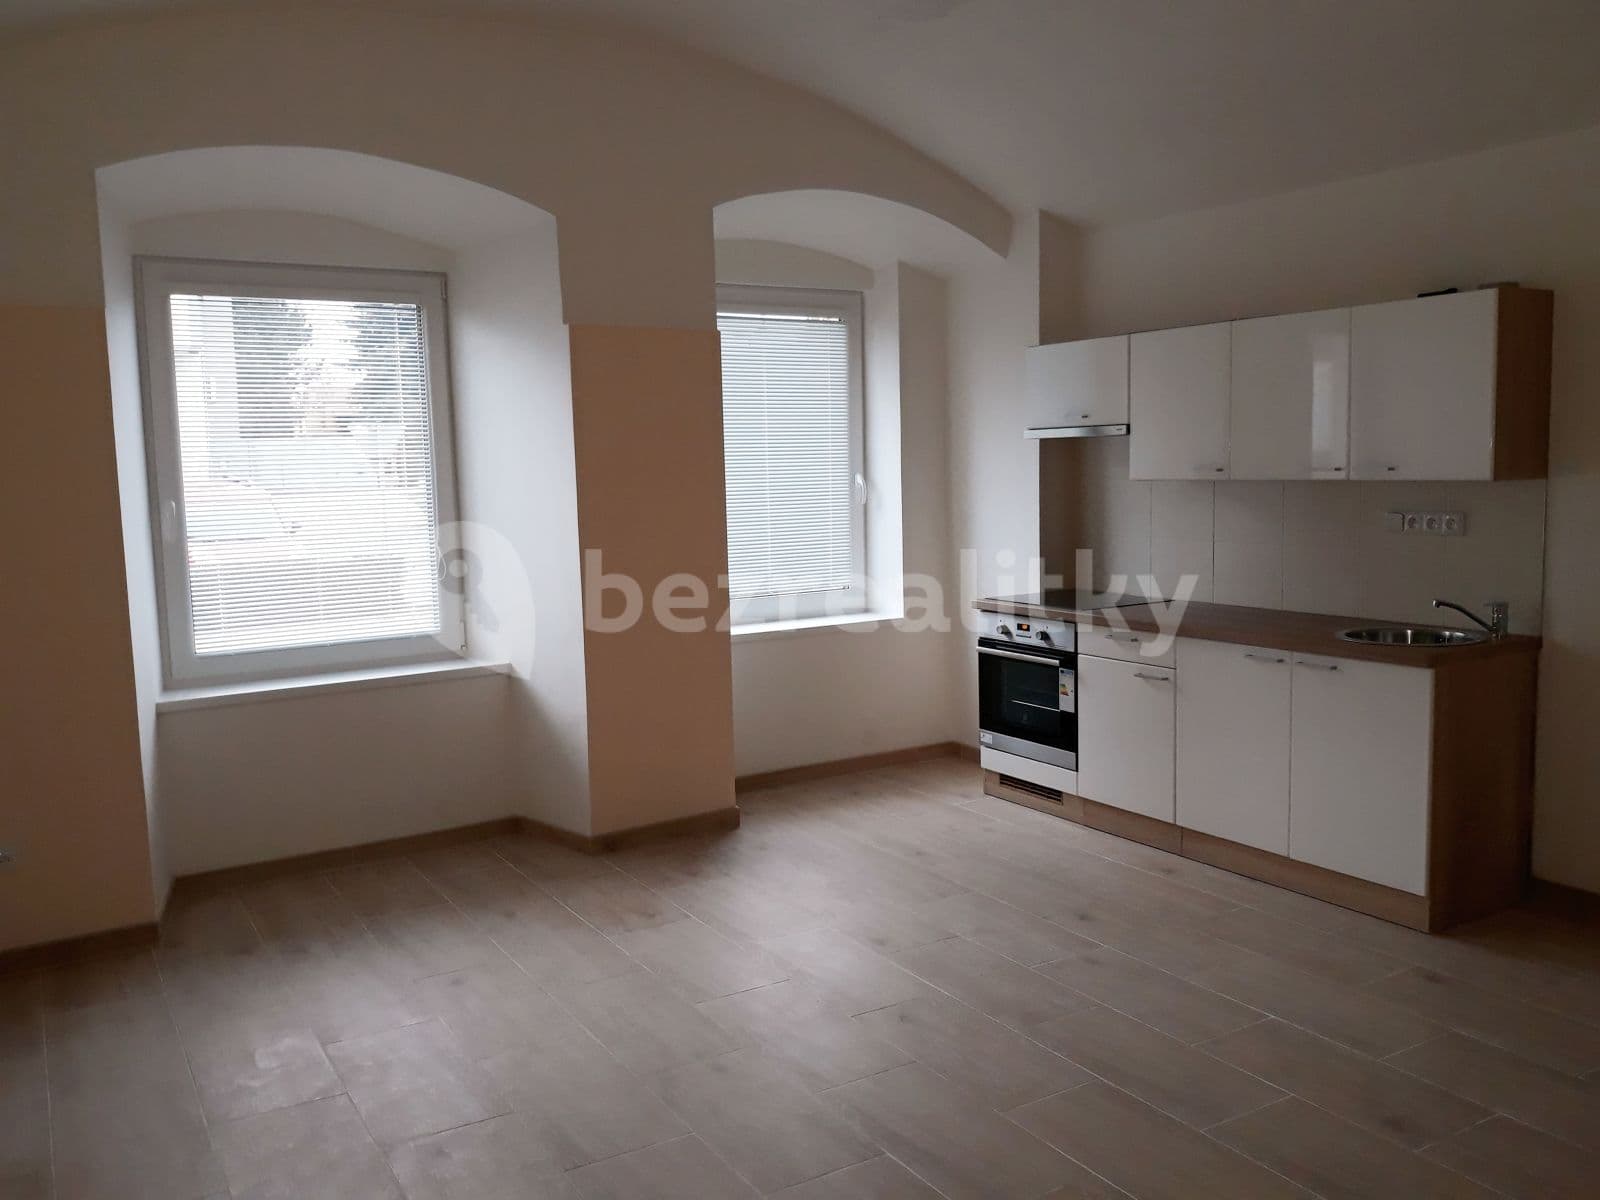 1 bedroom with open-plan kitchen flat to rent, 58 m², Pražská, Unhošť, Středočeský Region